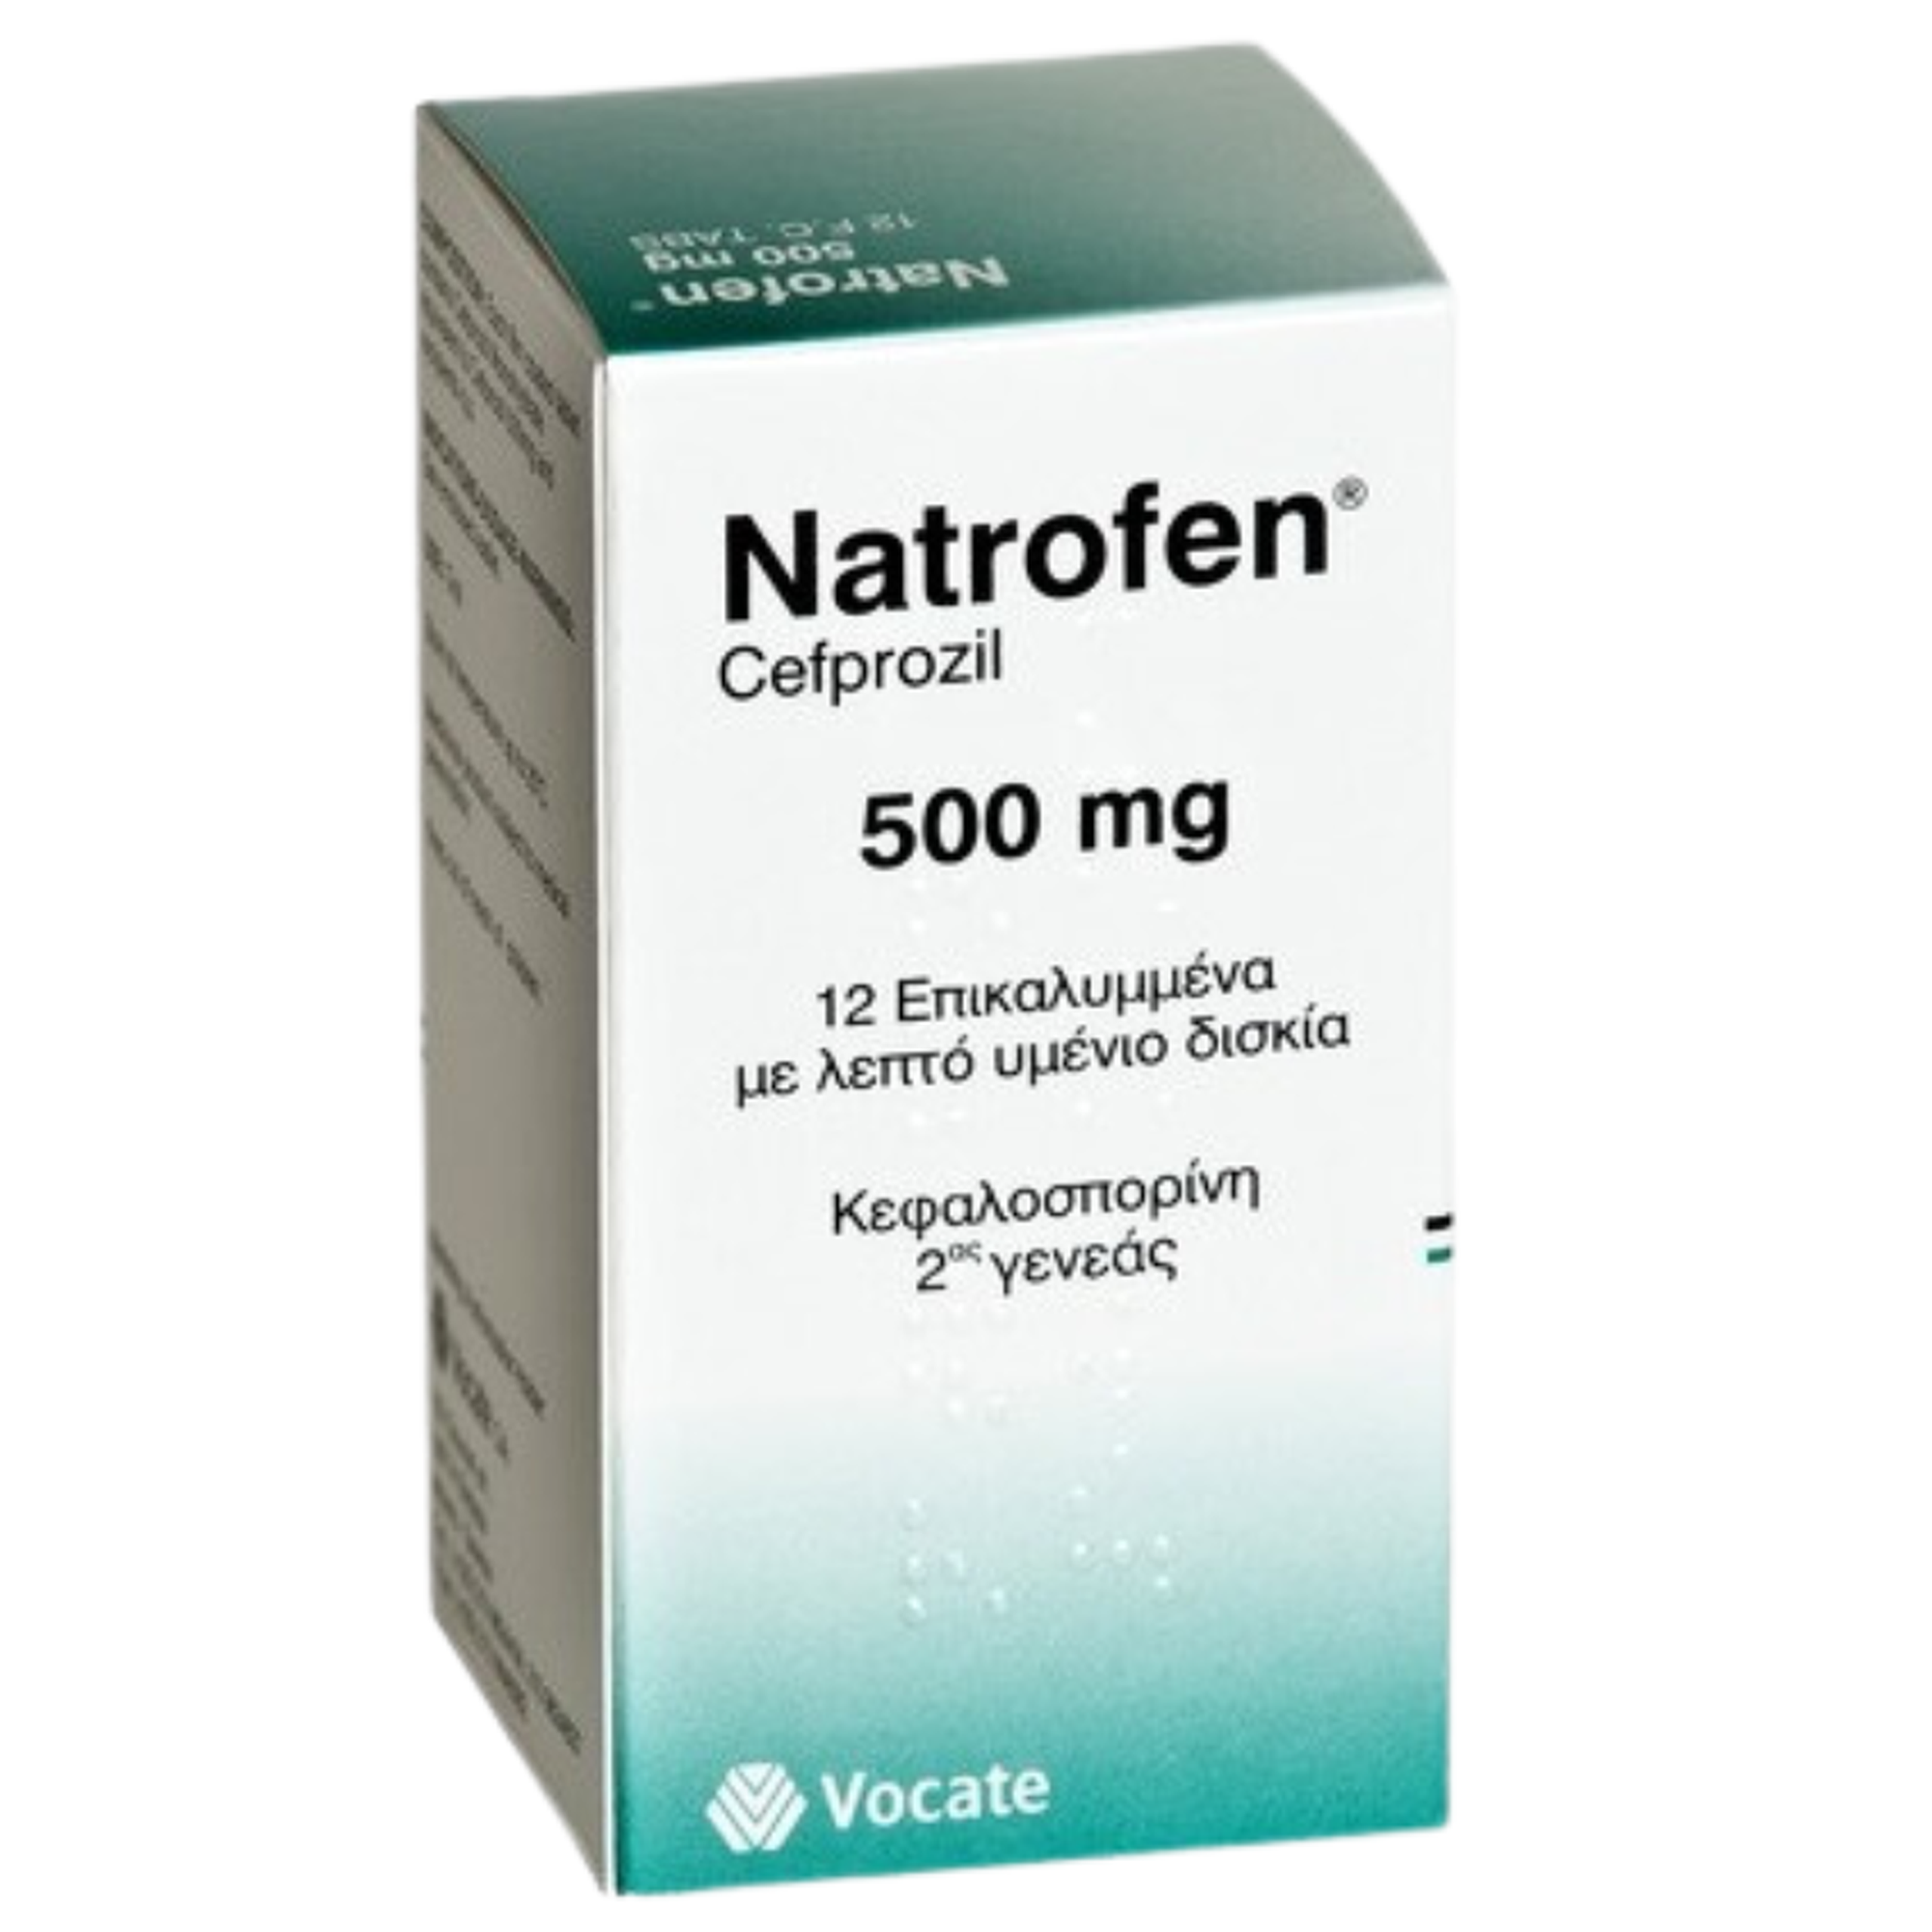 Thuốc Natrofen Cefprozil 500mg Remedina điều trị nhiễm khuẩn đường hô hấp, nhiễm khuẩn da (3 vỉ x 4 viên)